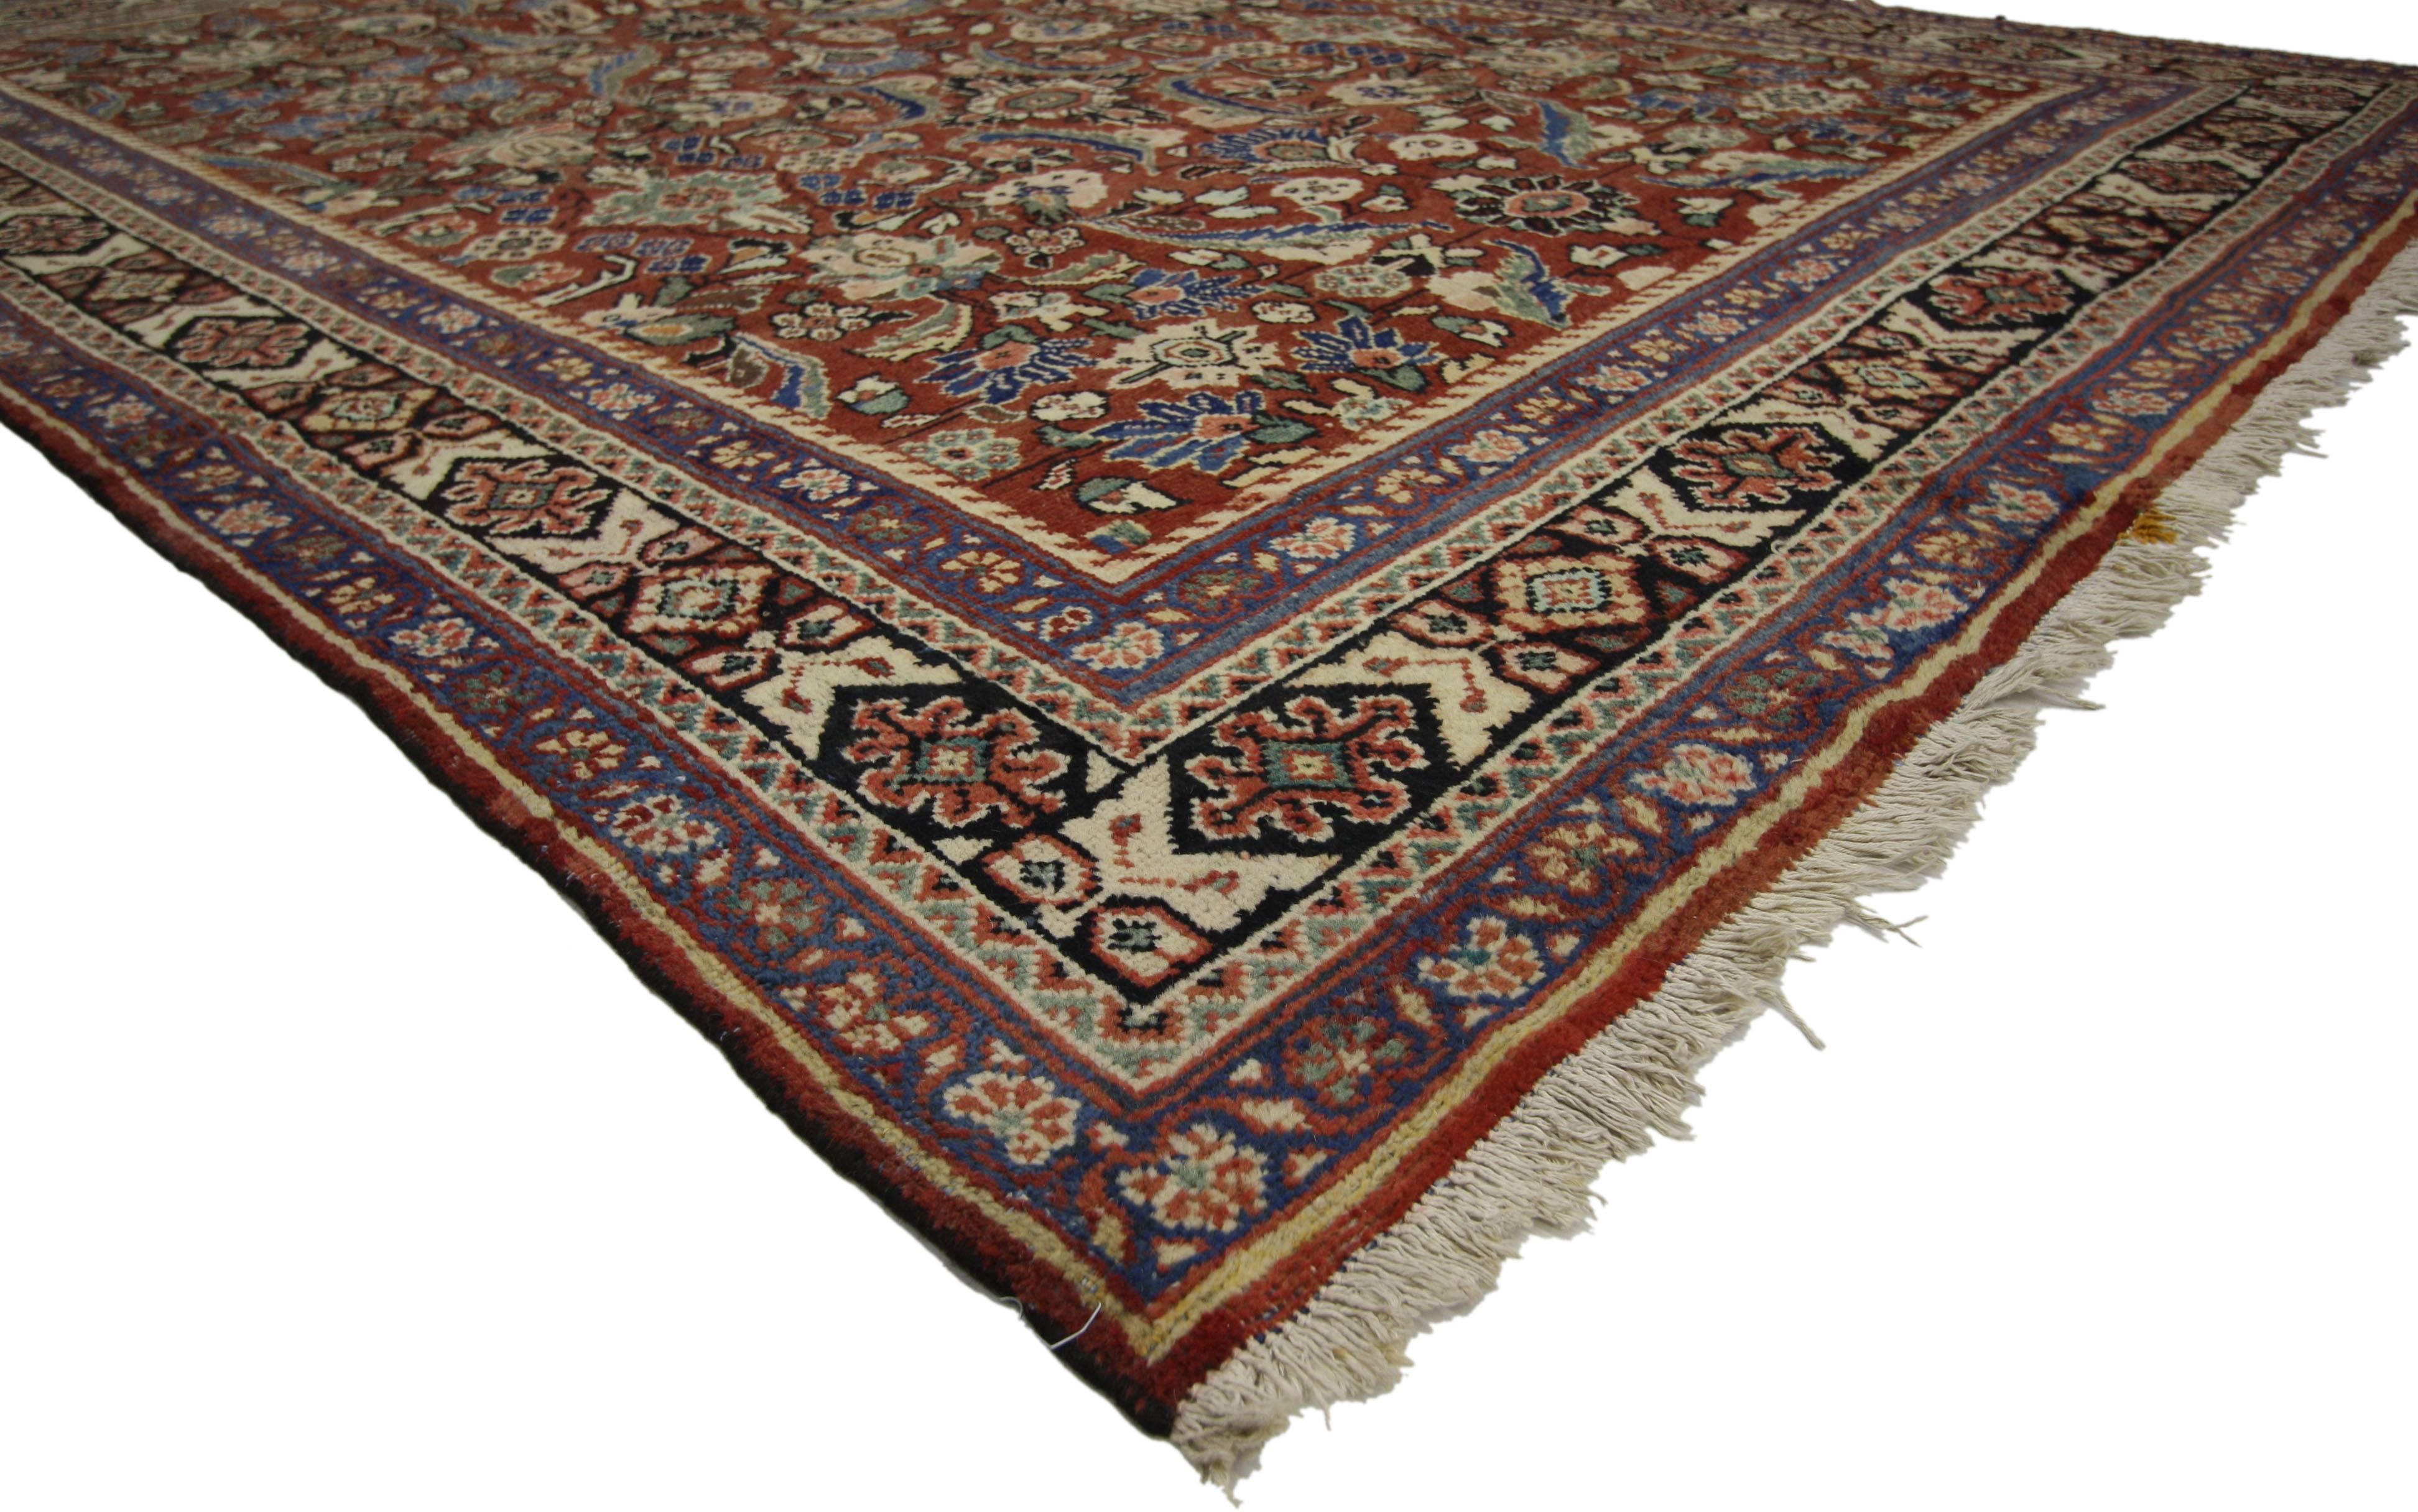 75320 Vintage Persian Mahal Teppich mit Modern English Traditional Style 07'06 X 10'03. Dieser handgeknüpfte persische Mahal-Teppich aus Wolle im Vintage-Stil zeichnet sich durch ein zentrales Medaillon in einem abraschierten Feld aus, das von